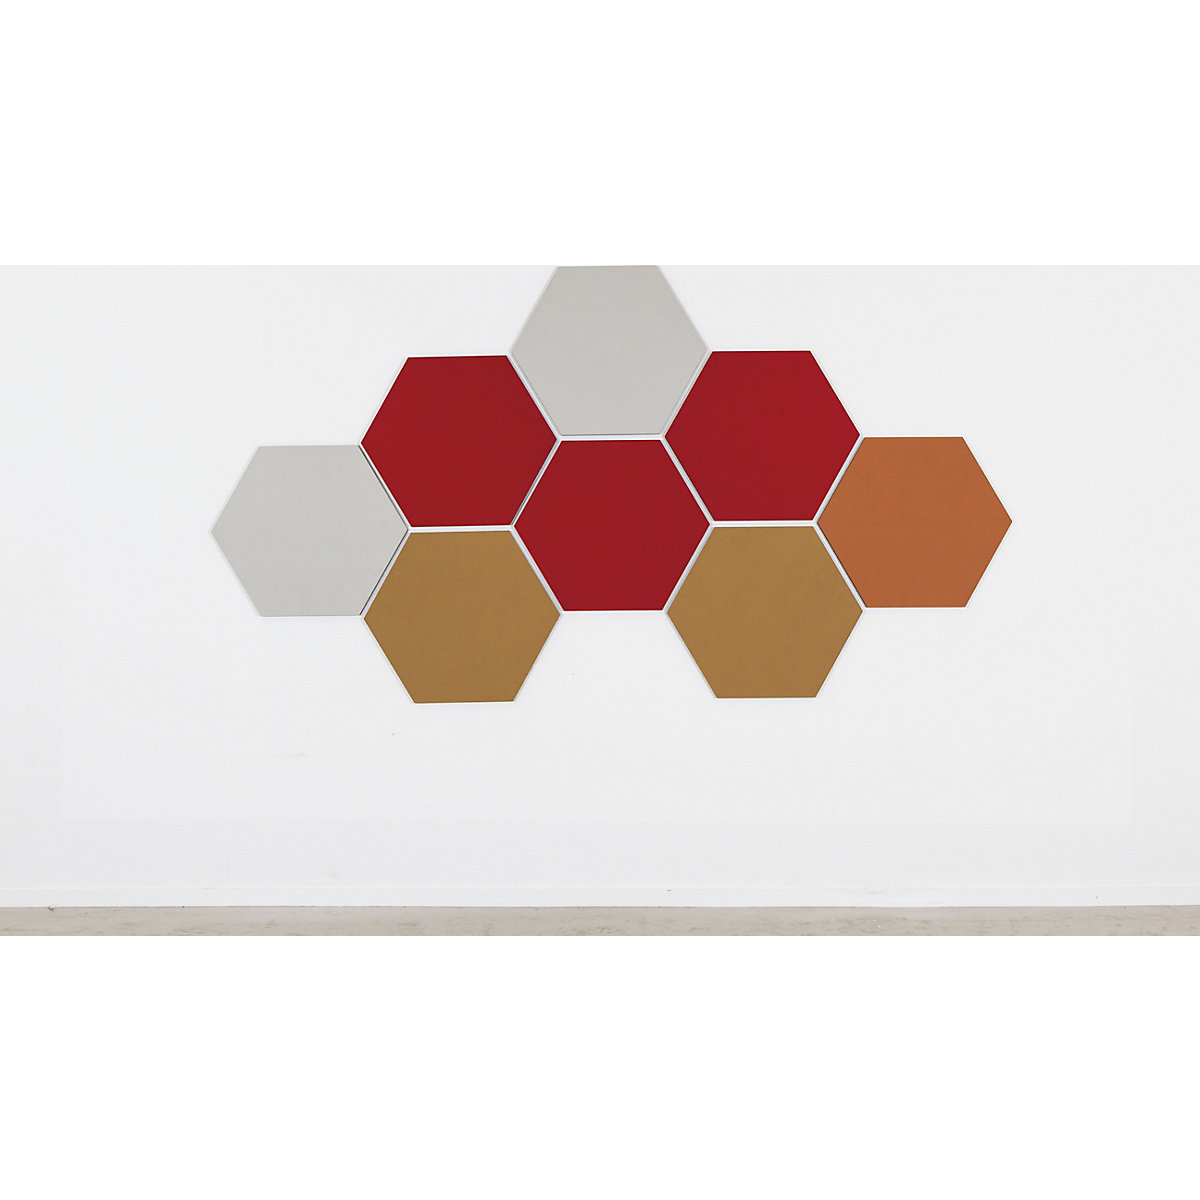 Quadro de pinos com design hexagonal – Chameleon (Imagem do produto 18)-17